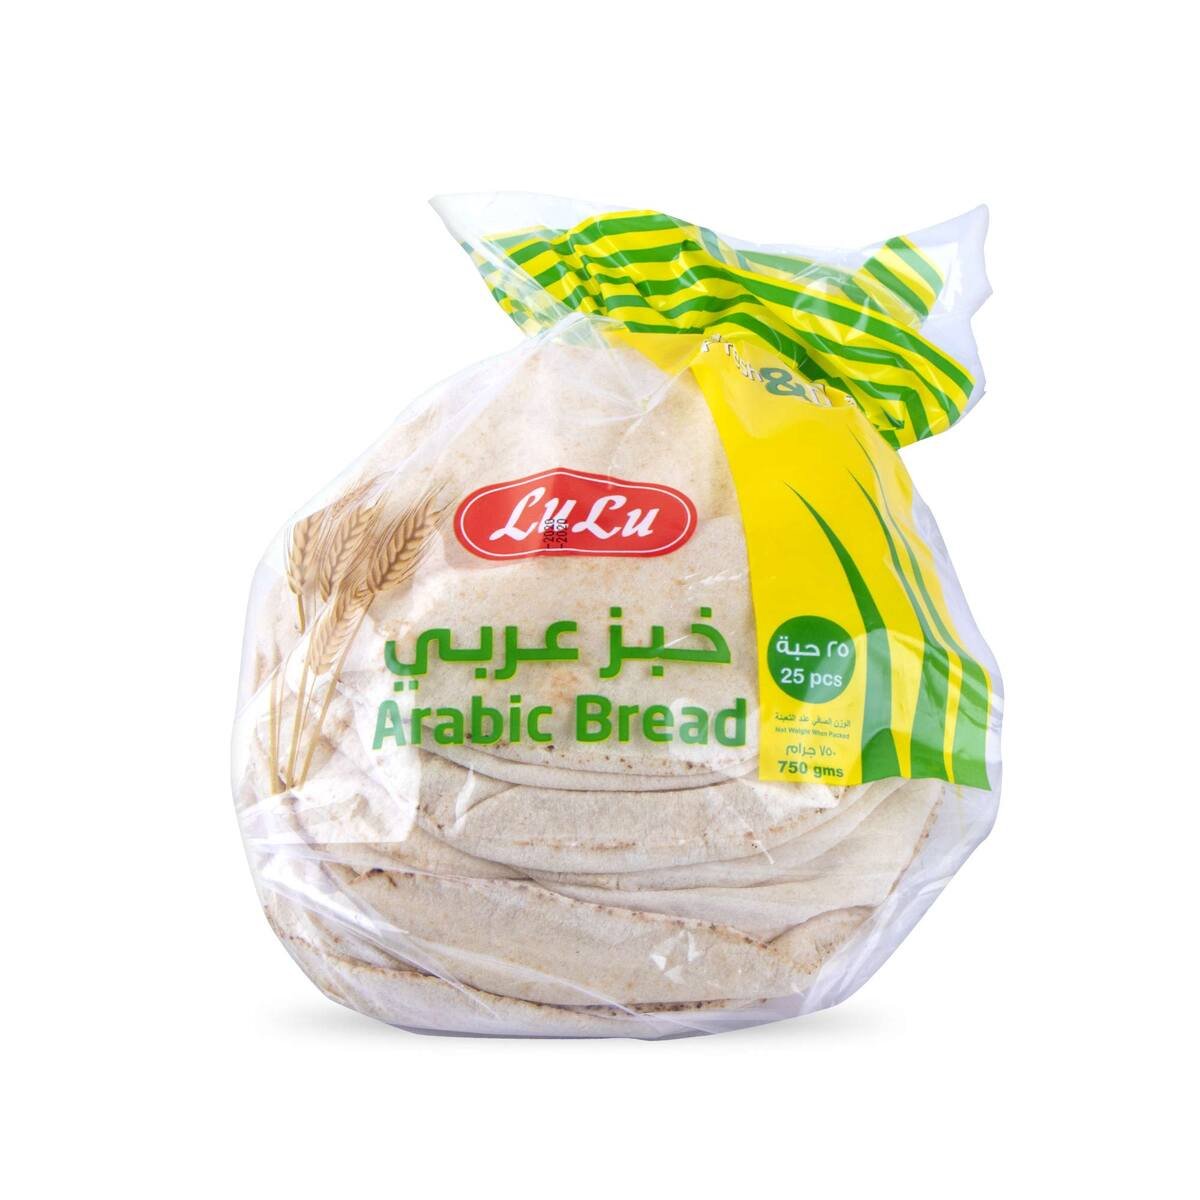 Lulu Arabic Bread Small 25pcs